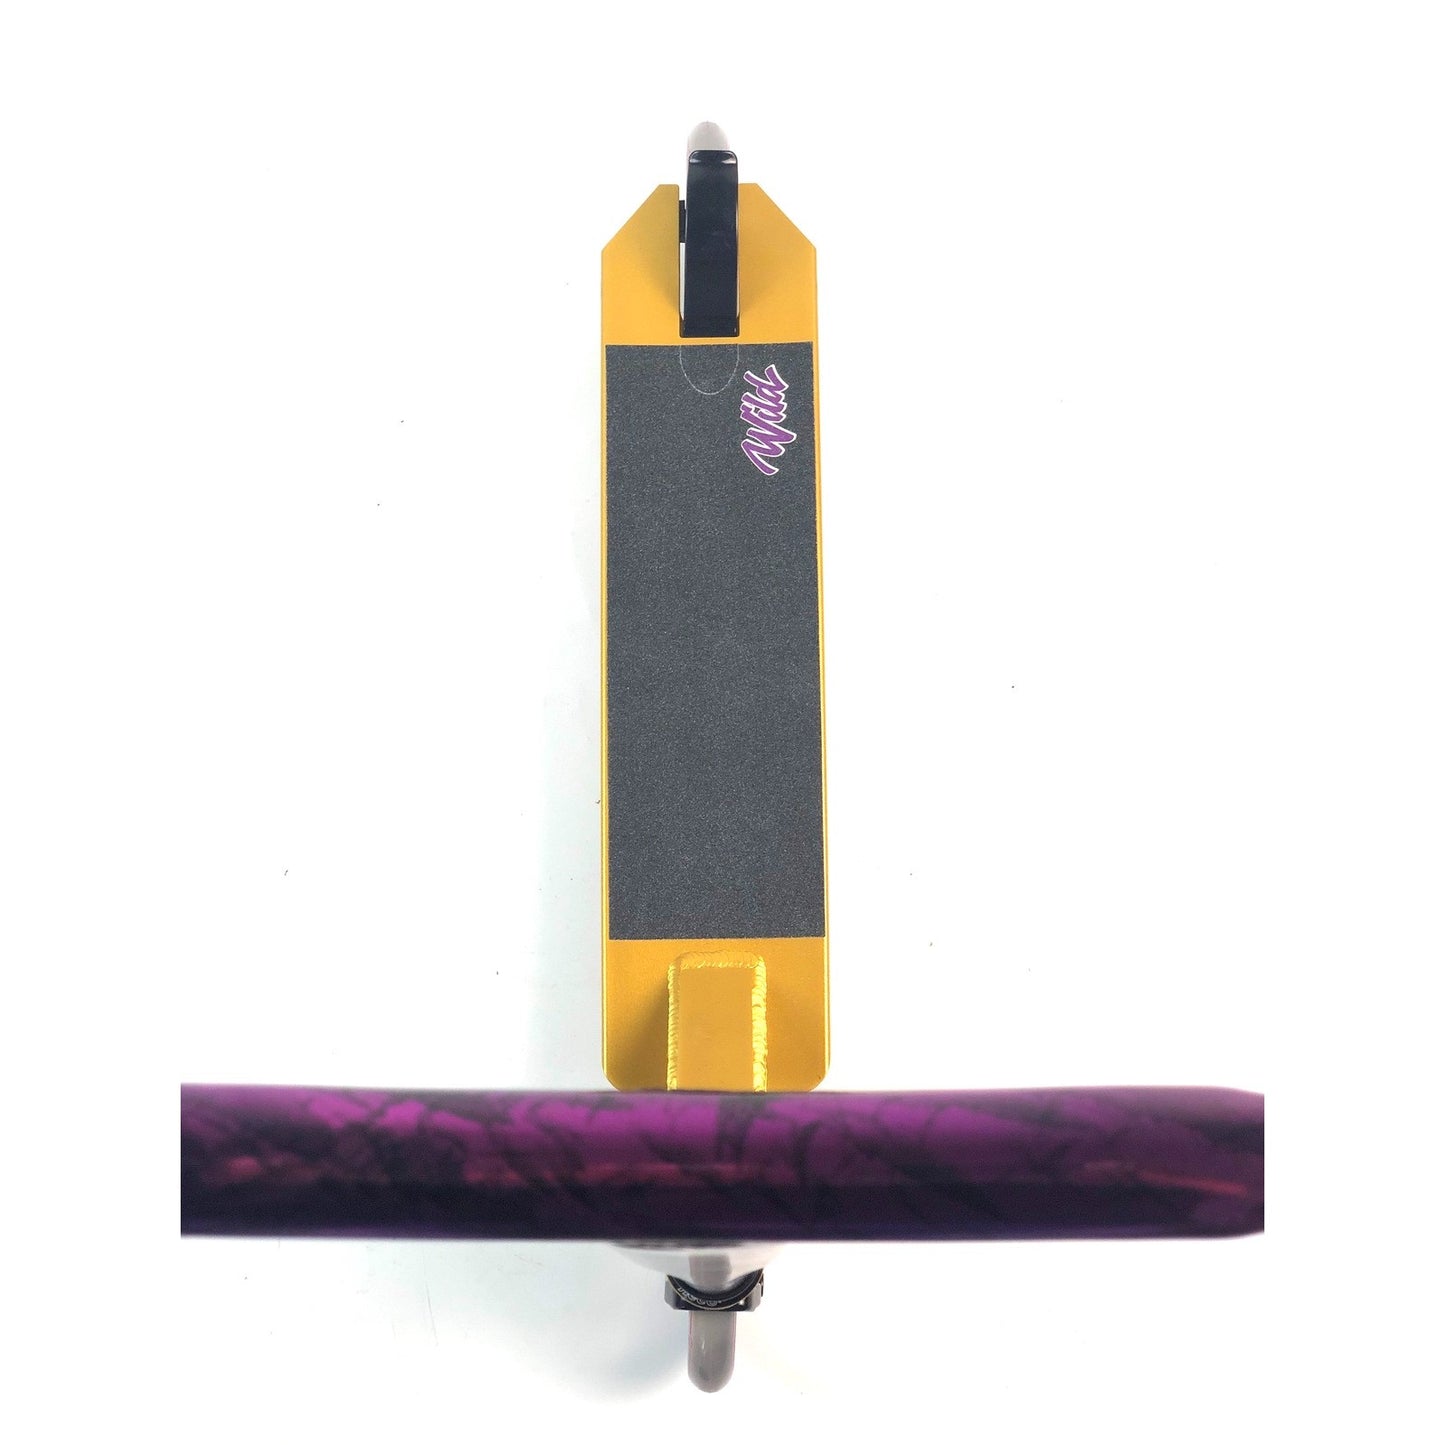 Grit Wild Gold / Vapour Purple Black Laser